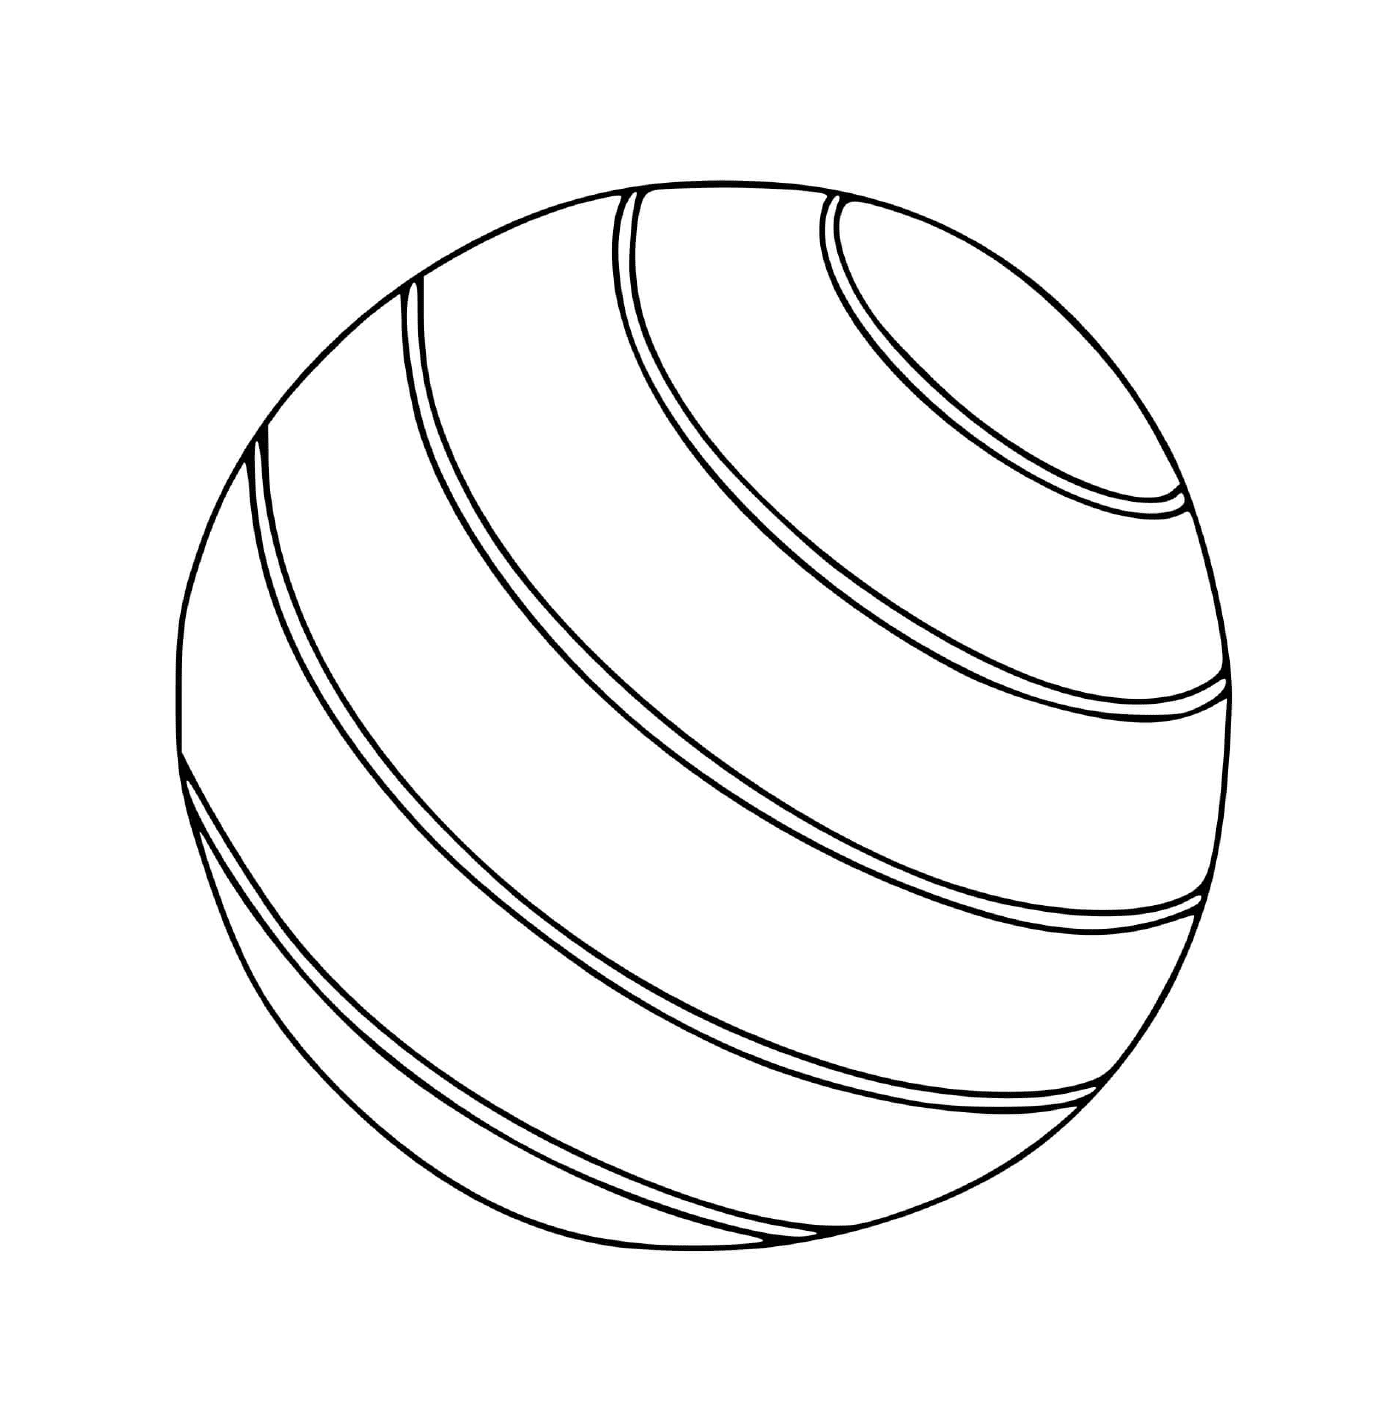  A ball ready for fun 